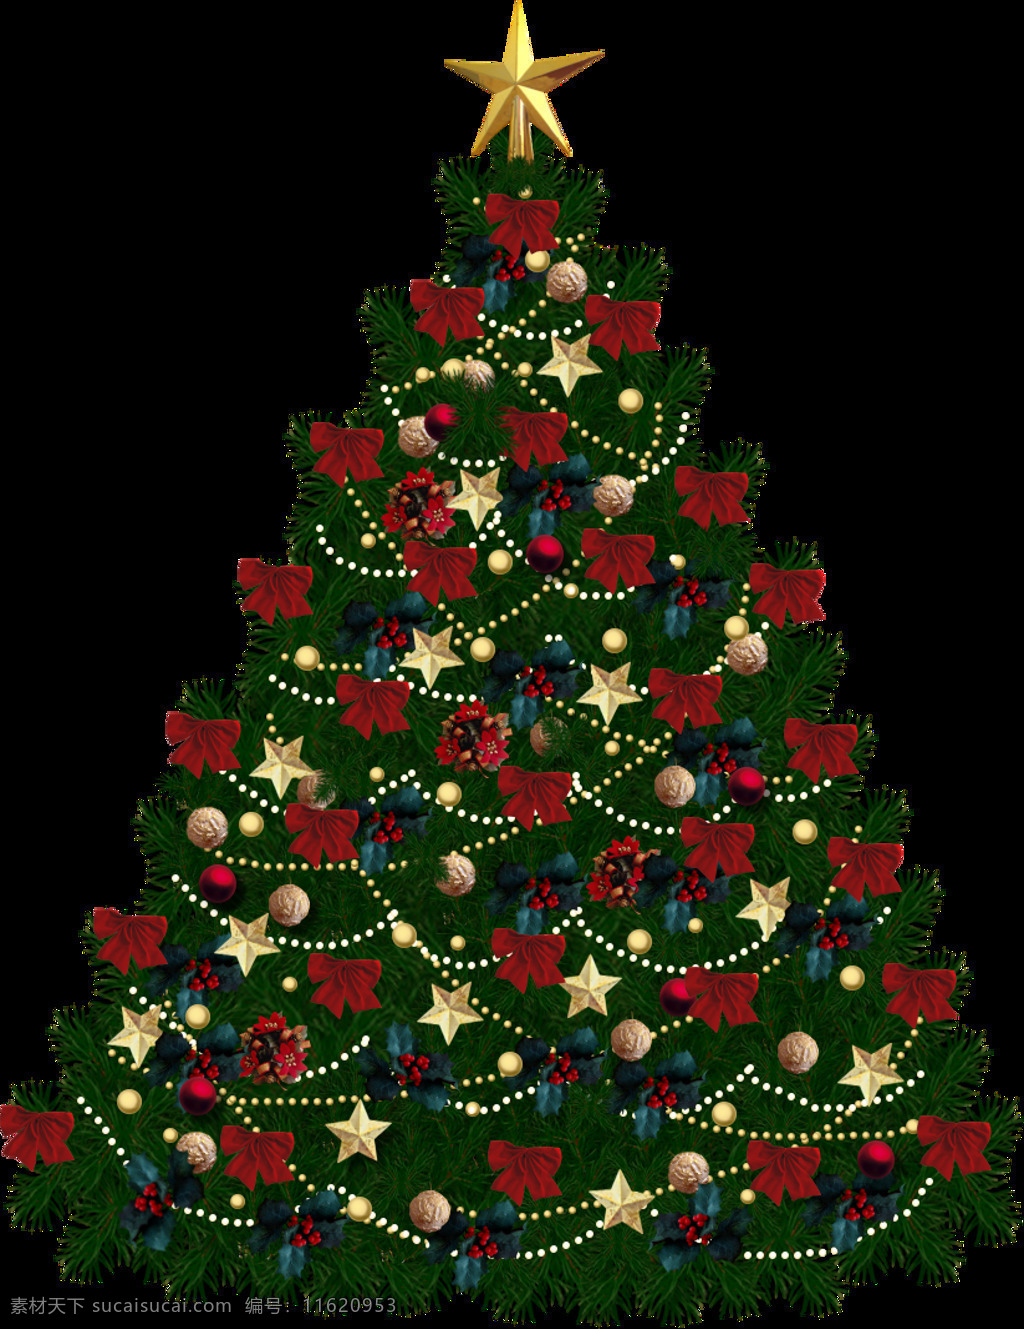 枞树 圣诞树 免 抠 透明 图 层 丝带圣诞树 圣诞树装饰 矢量圣诞树 可爱圣诞树 商场圣诞树 白色圣诞树 松树 枞树素材 枞树装饰图 圣诞元素 绿色圣诞树 节日装饰元素